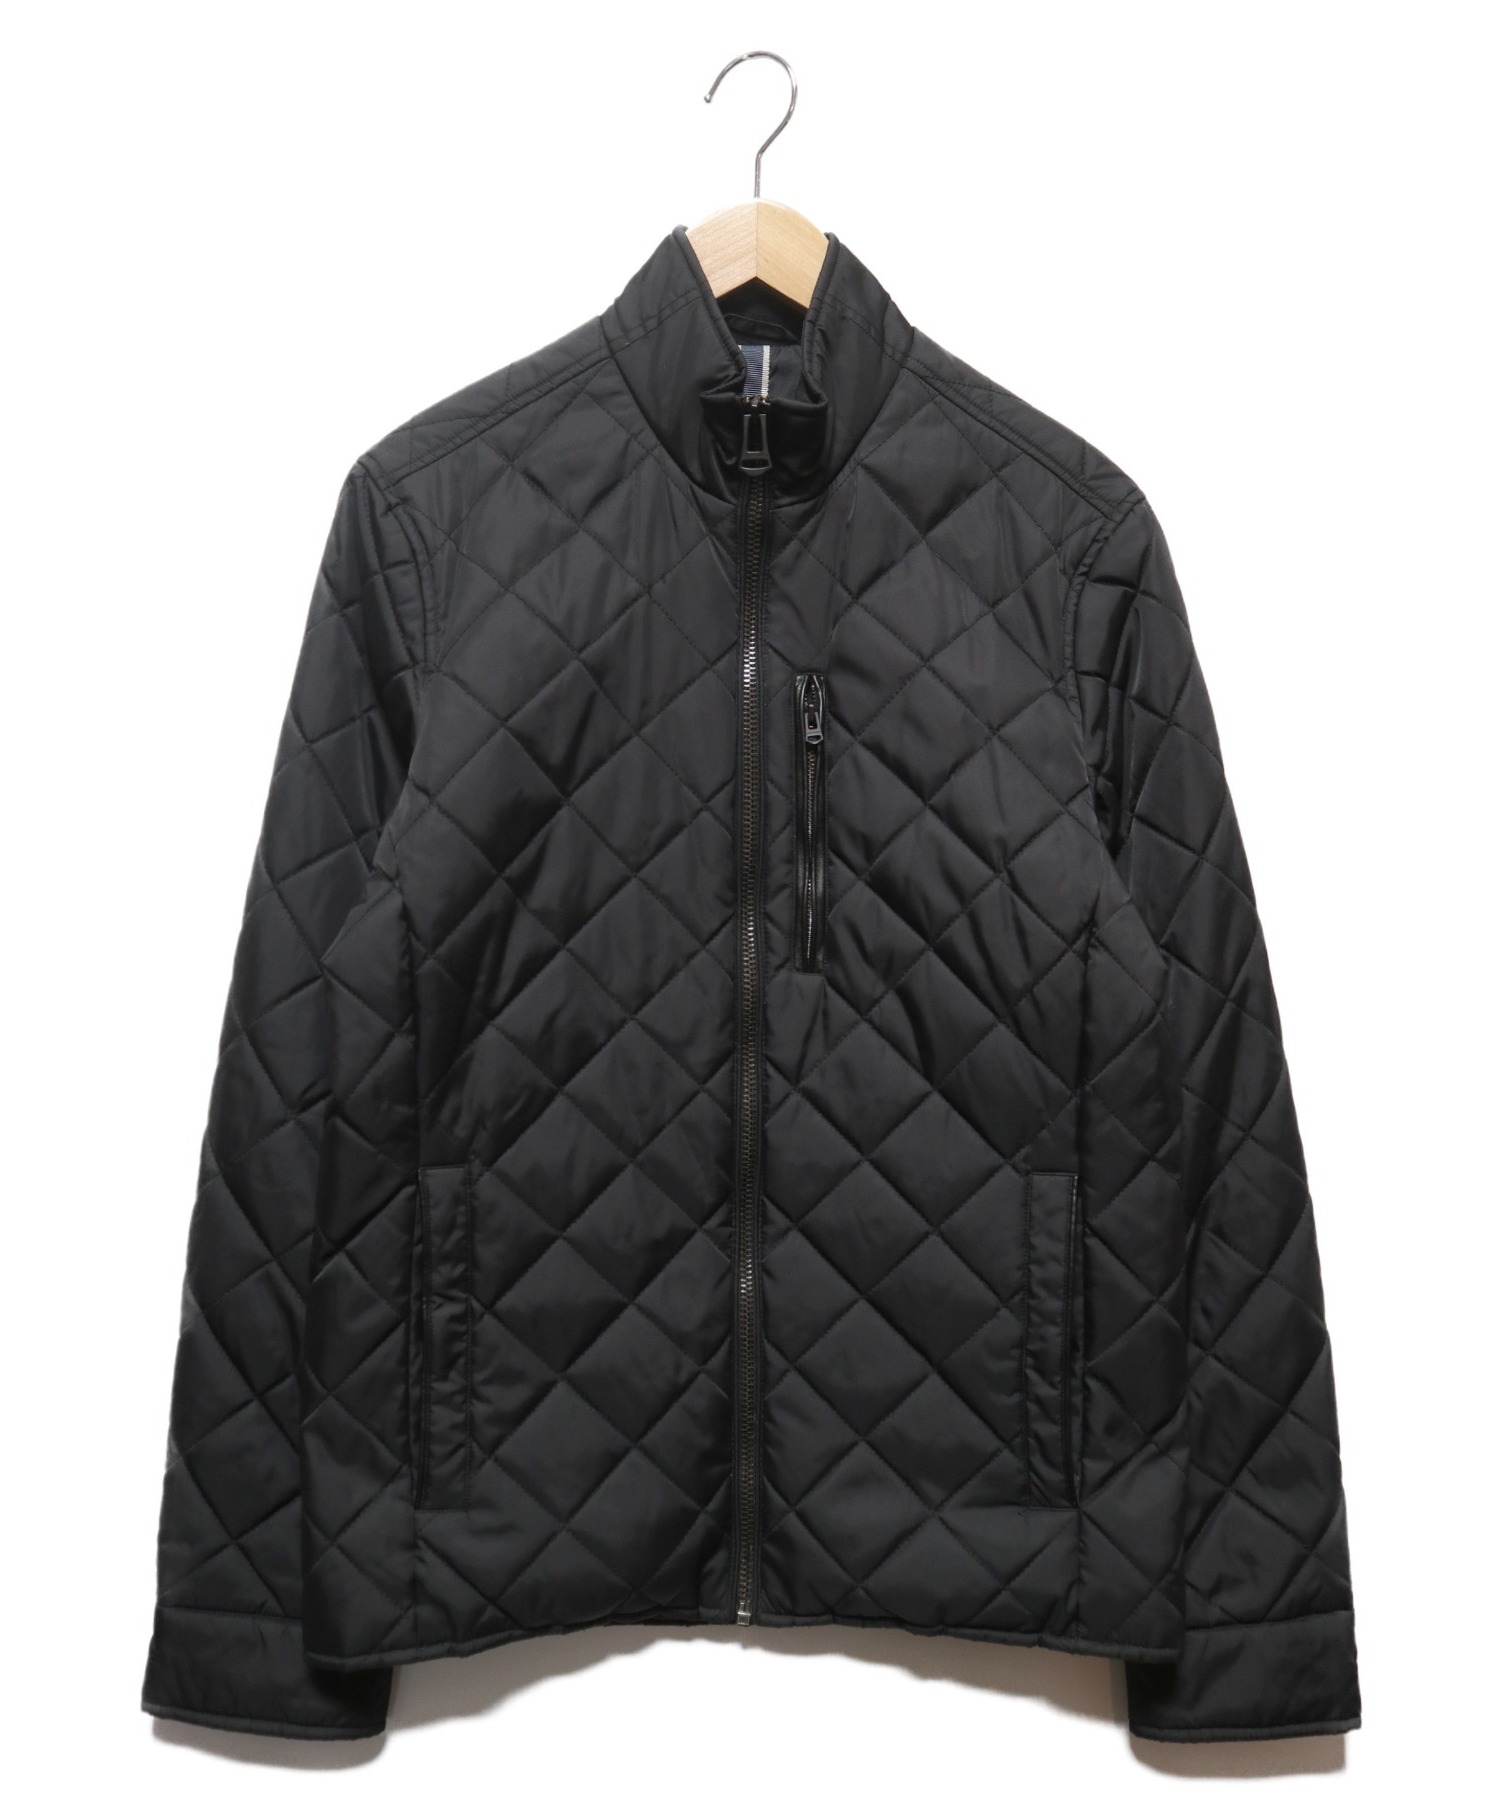 COLE HAAN (コールハーン) キルティングジャケット ブラック サイズ:XS